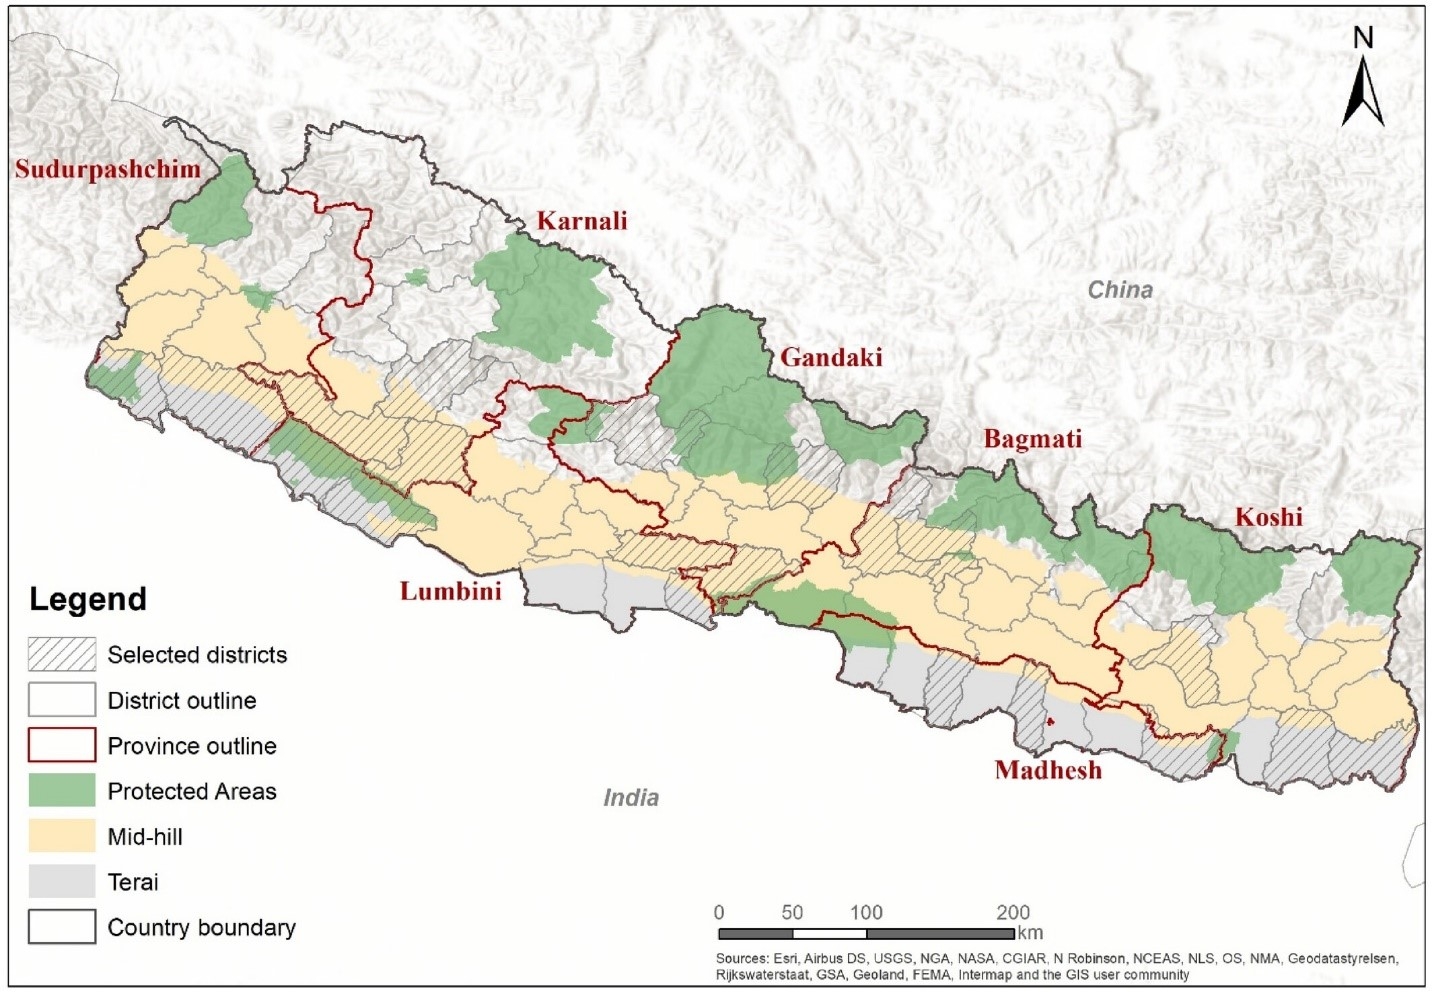 Thái độ mâu thuẫn và bất nhất của người dân Nepal đối với việc săn bắt và kinh doanh tê tê